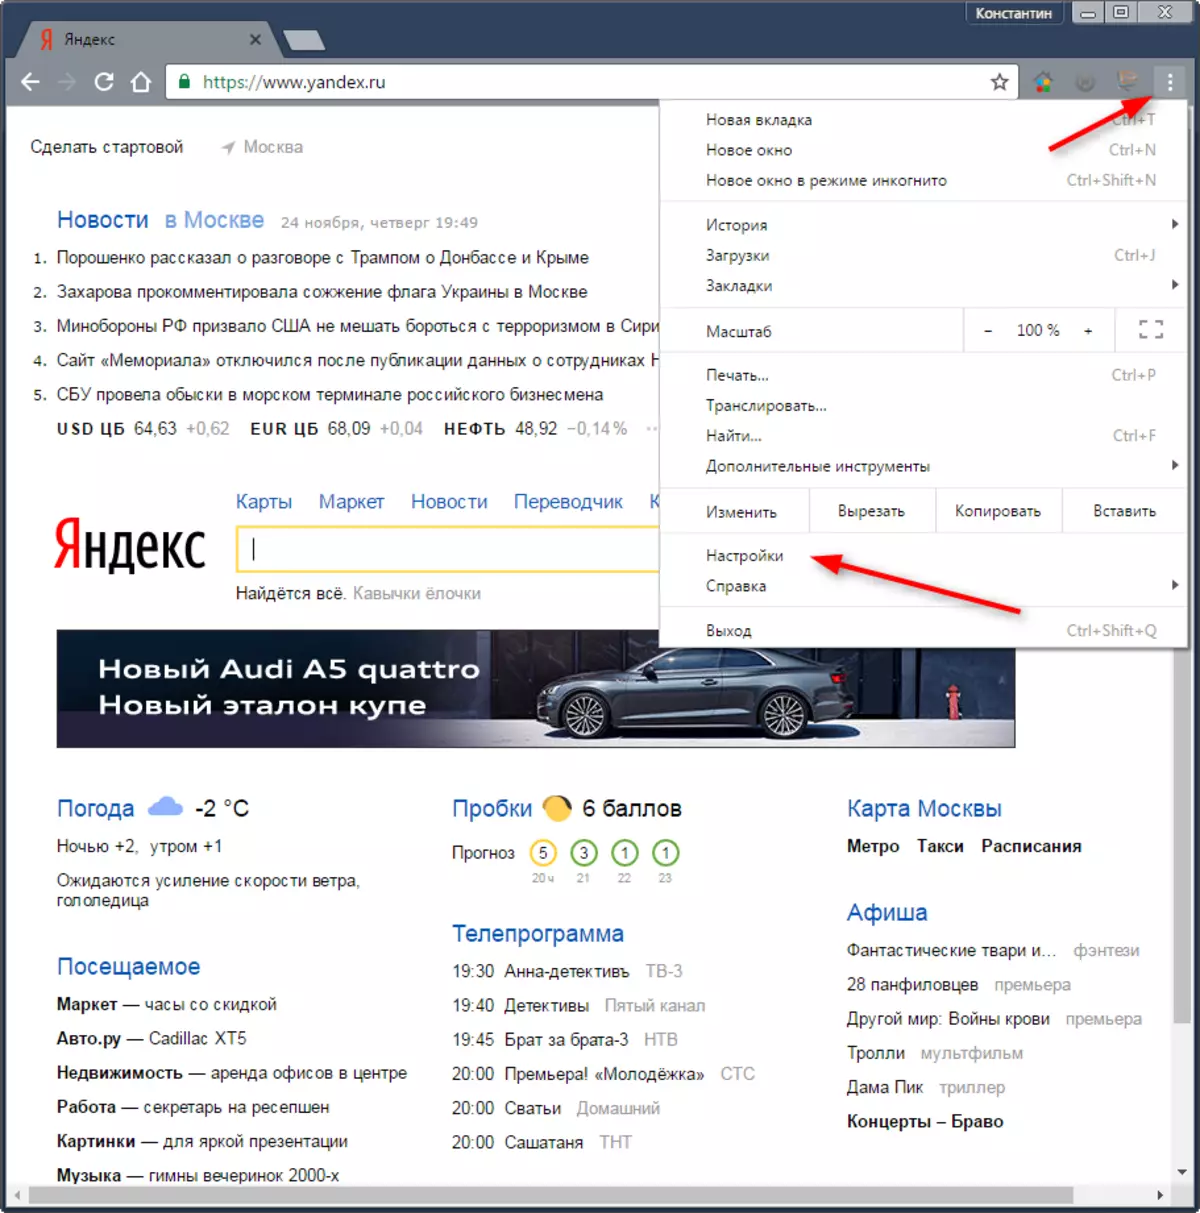 Yandex കാർഡുകൾ പ്രവർത്തിക്കുന്നില്ലെങ്കിൽ എന്തുചെയ്യണം 1